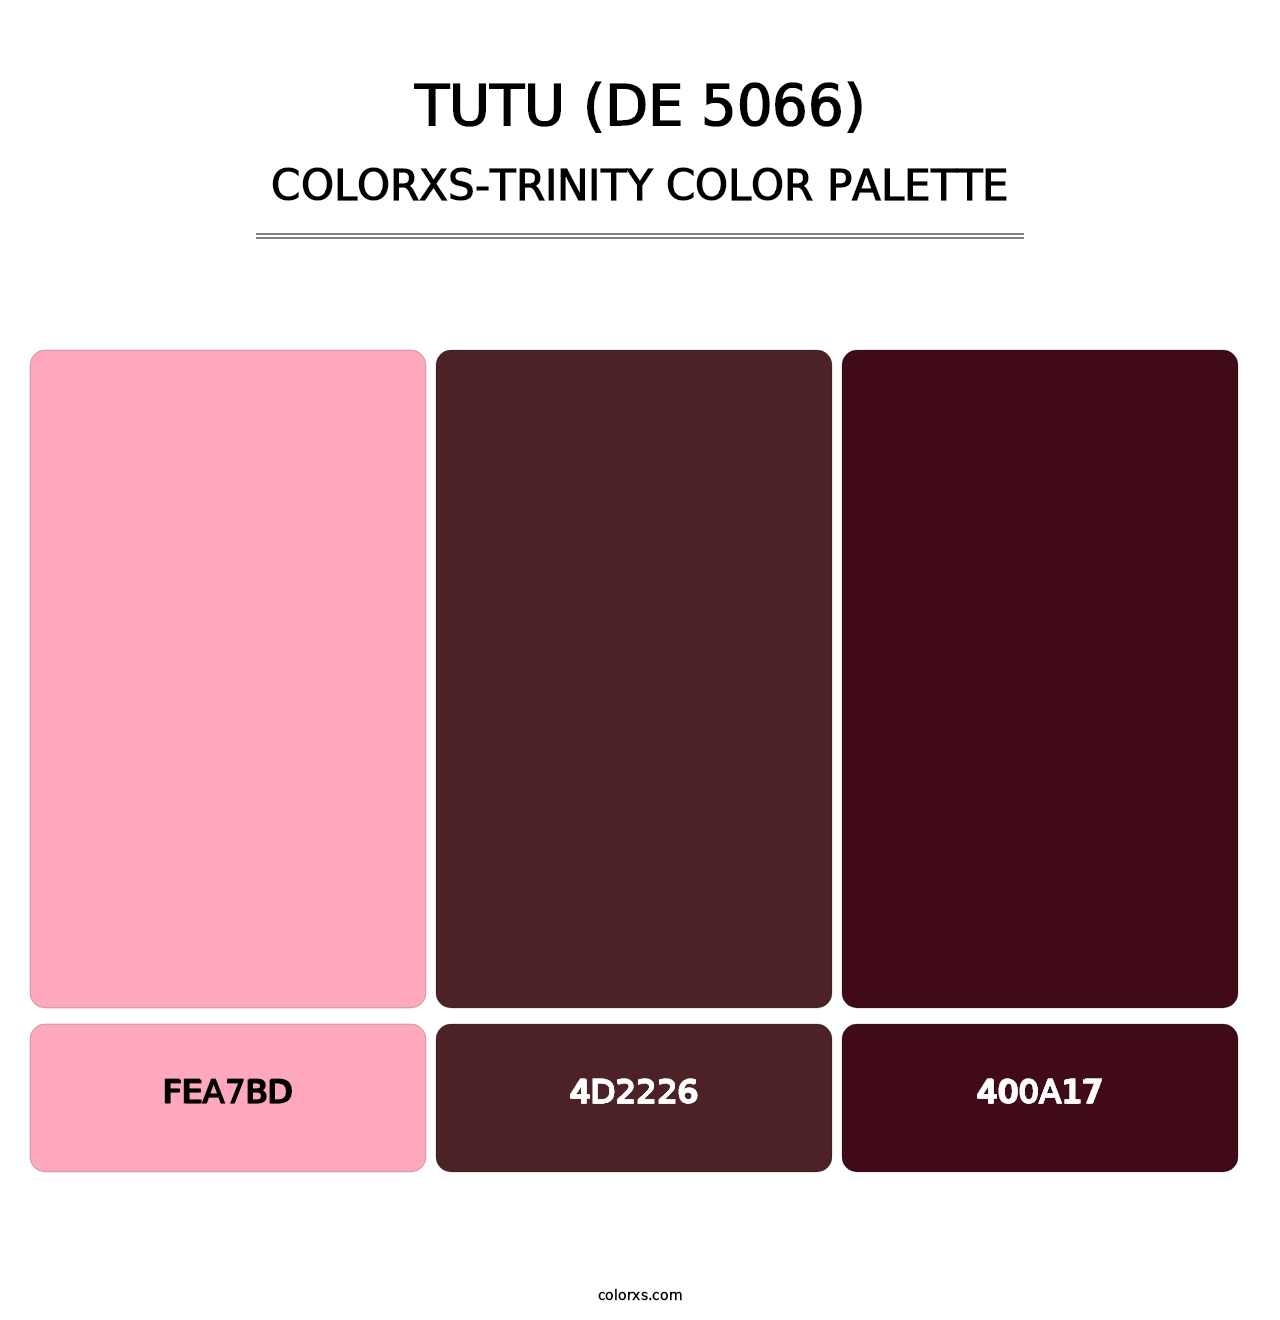 Tutu (DE 5066) - Colorxs Trinity Palette